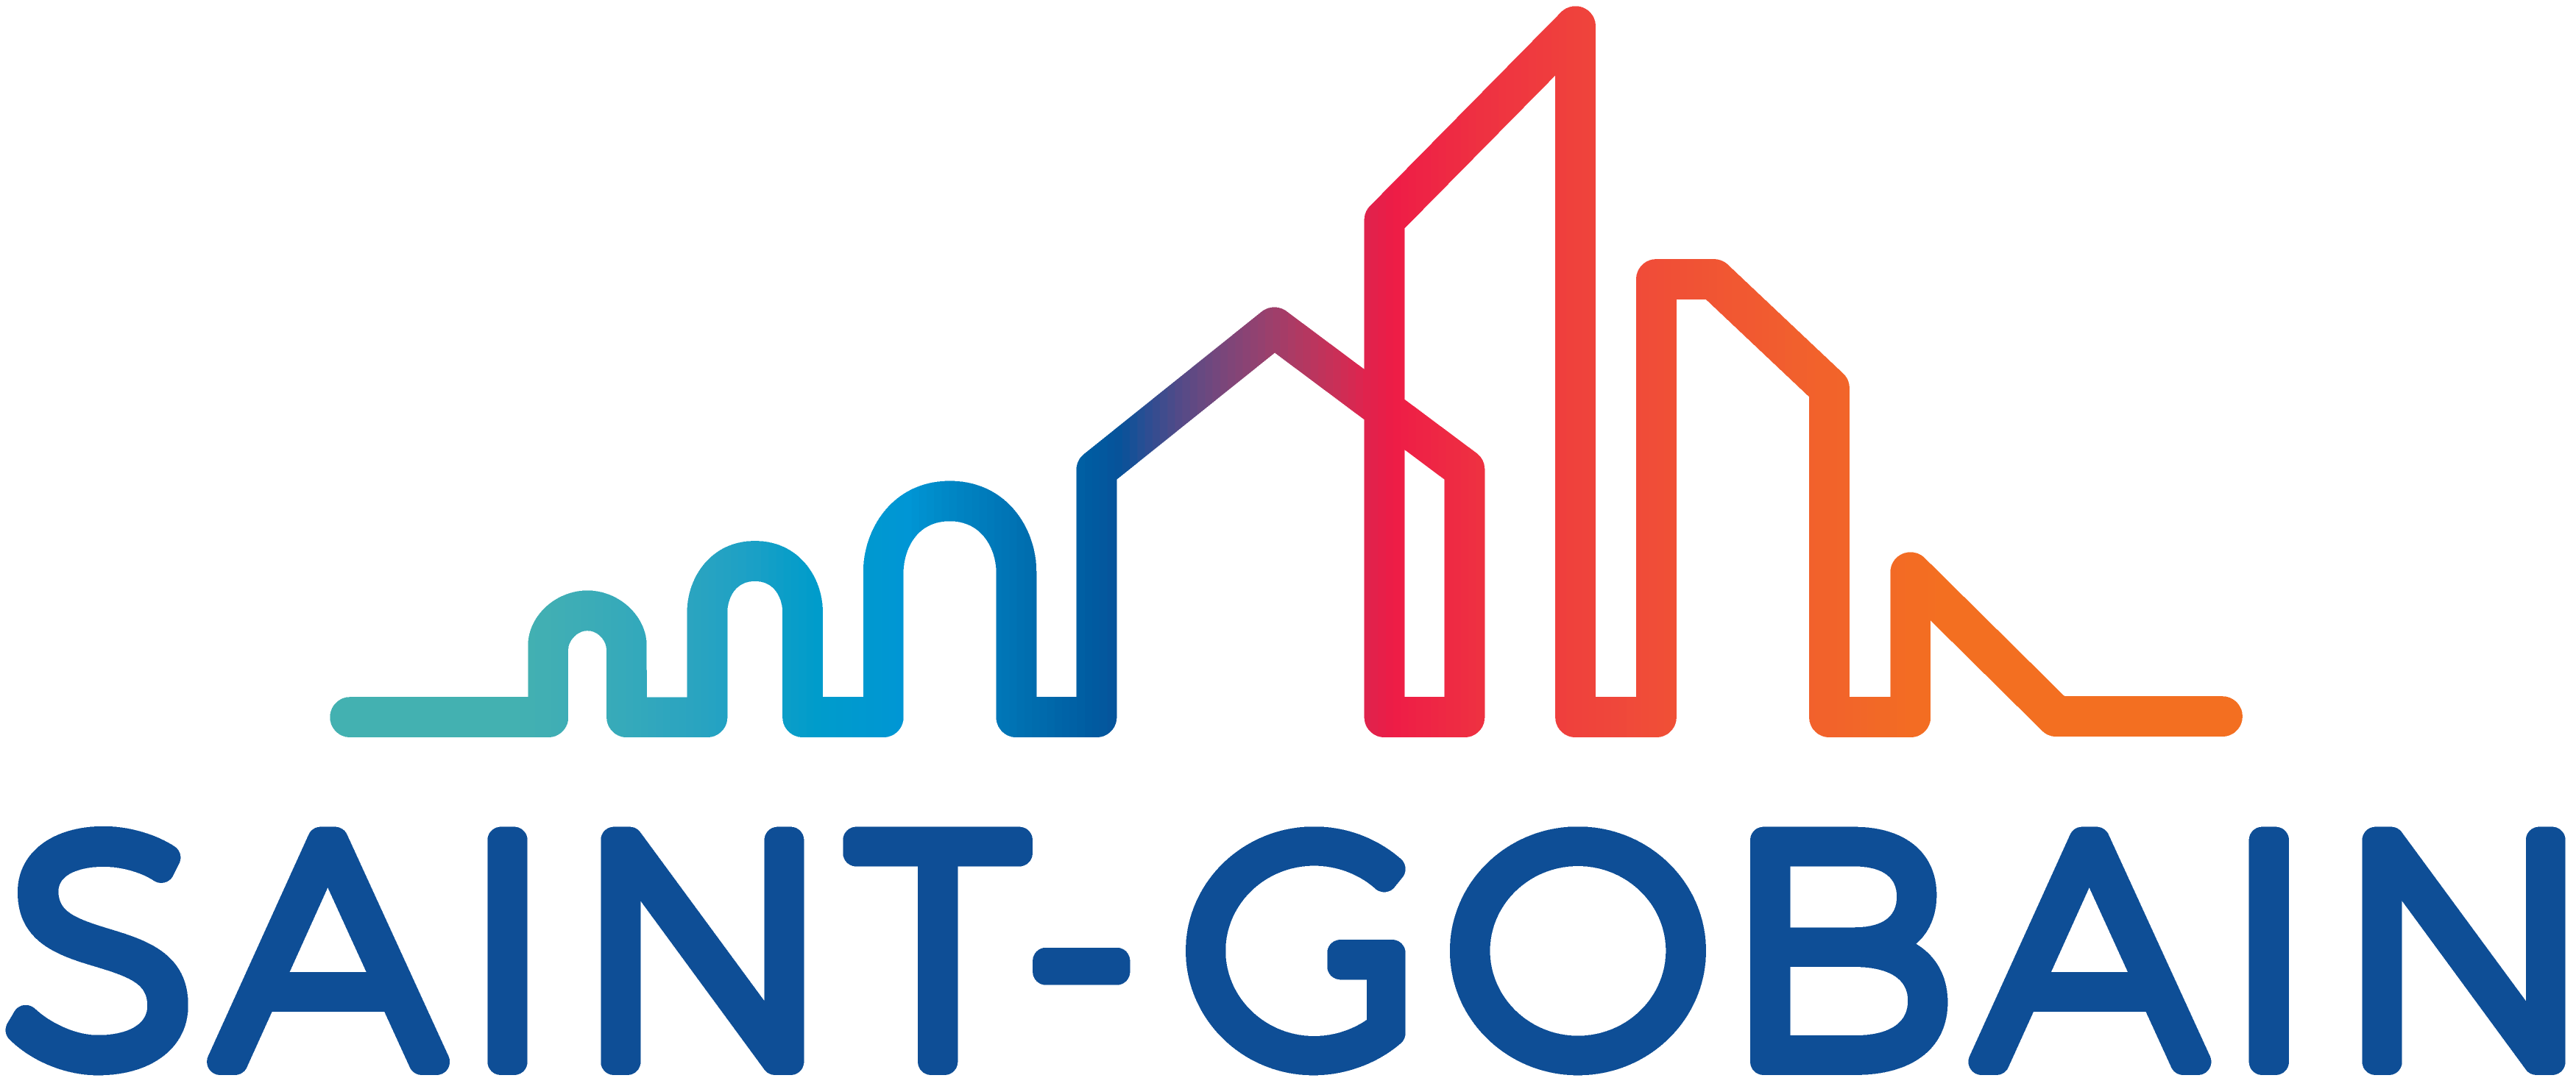 saint-gobain logo.